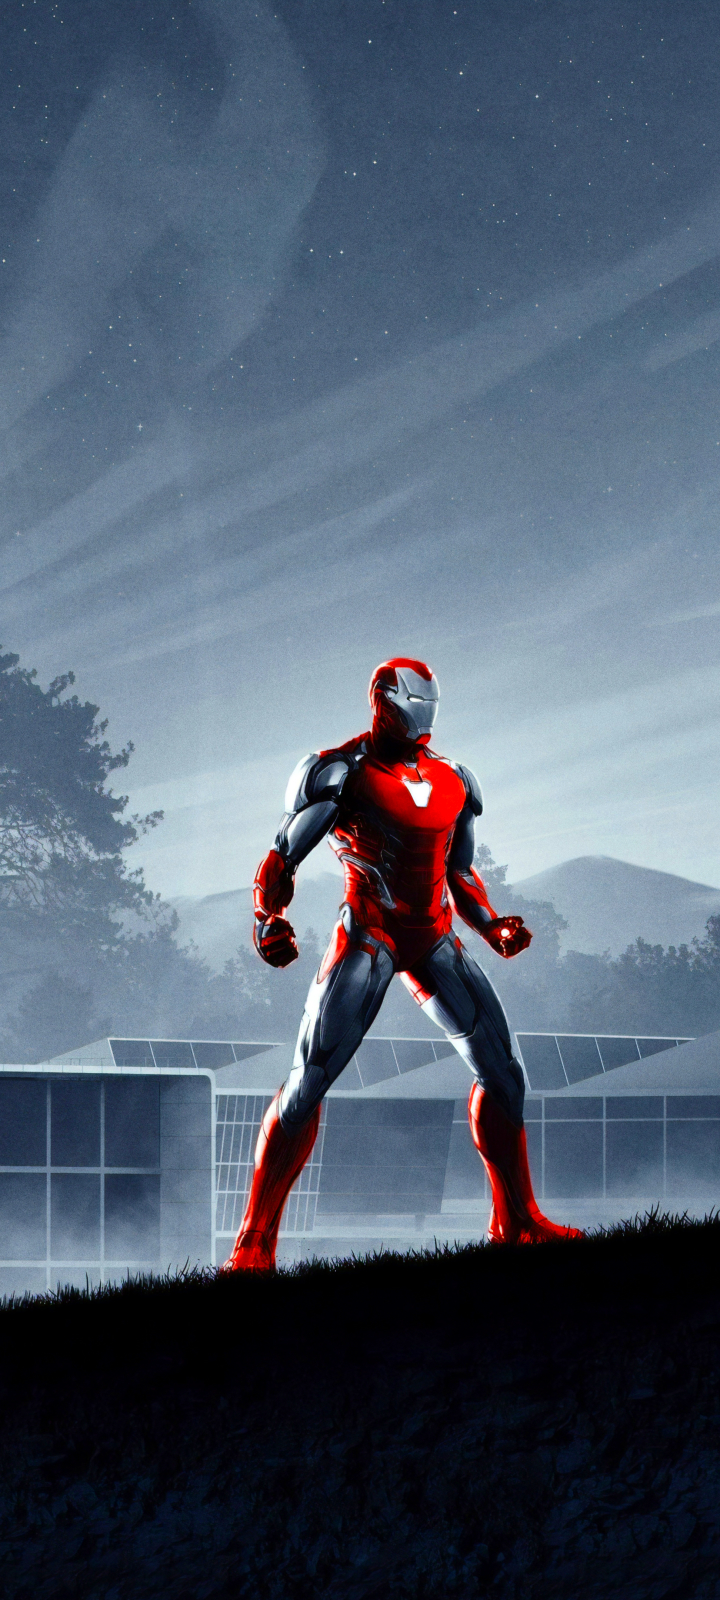 Descarga gratuita de fondo de pantalla para móvil de Los Vengadores, Películas, Hombre De Acero, Tony Stark, Vengadores: Endgame, Vengadores.